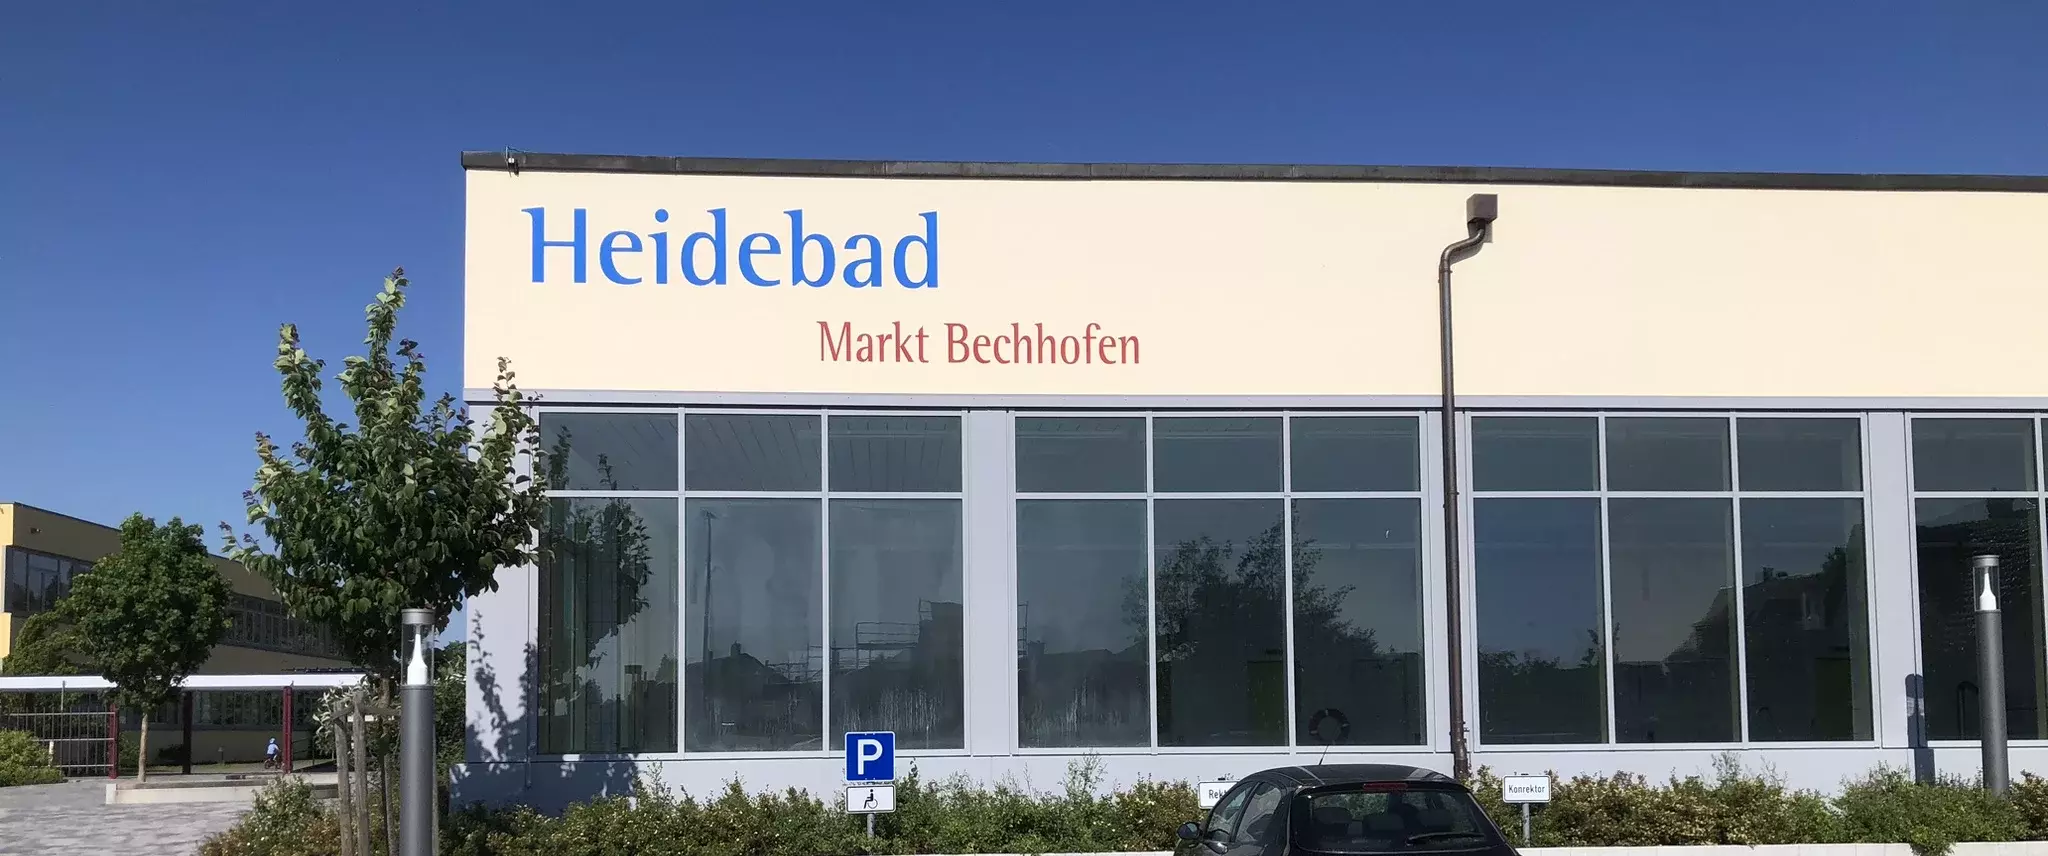 Heidebad Bechhofen